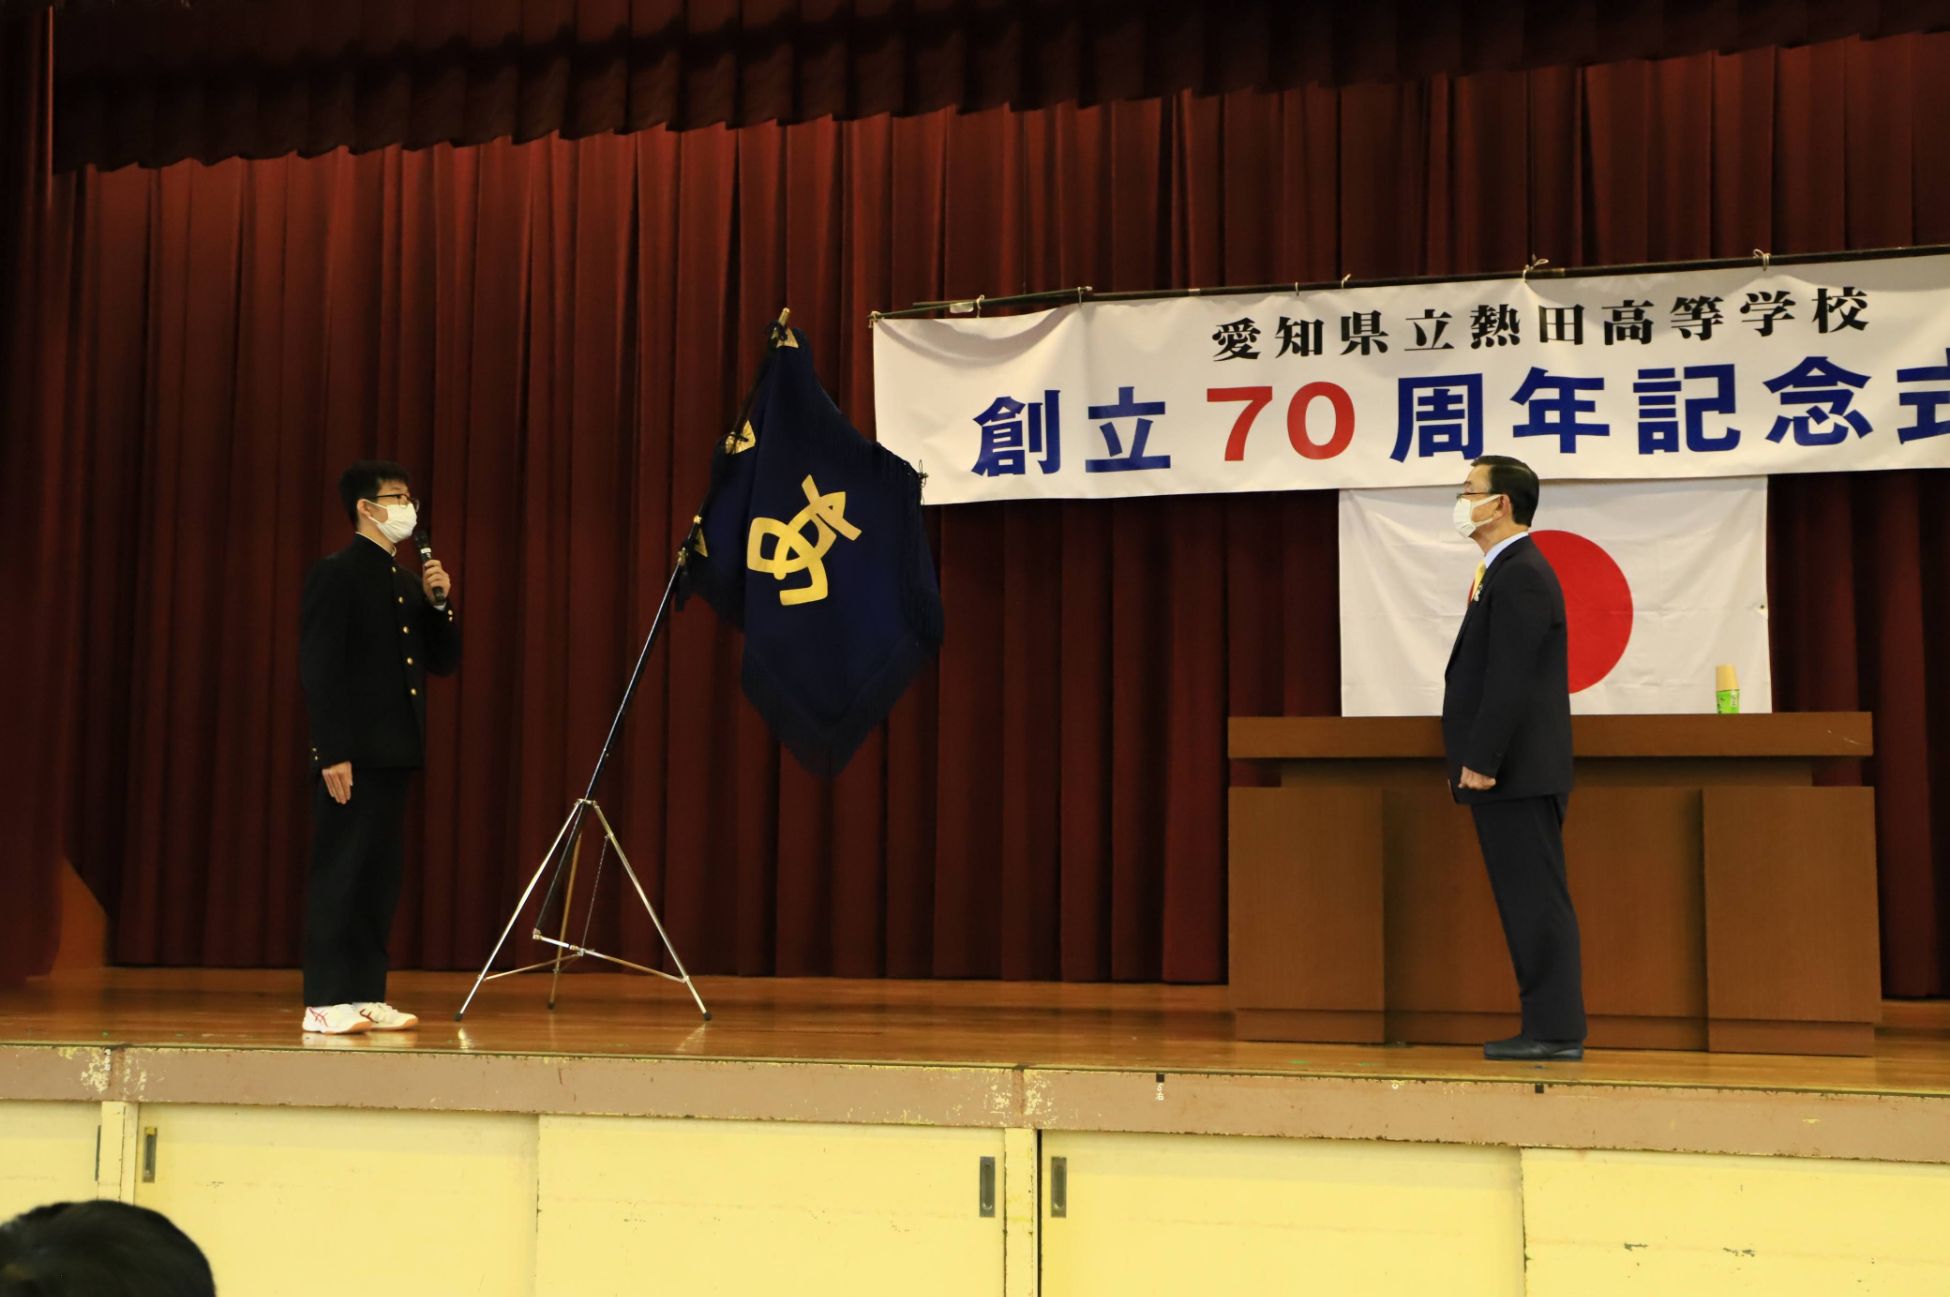 熱田高等学校同窓会70周年記念風景